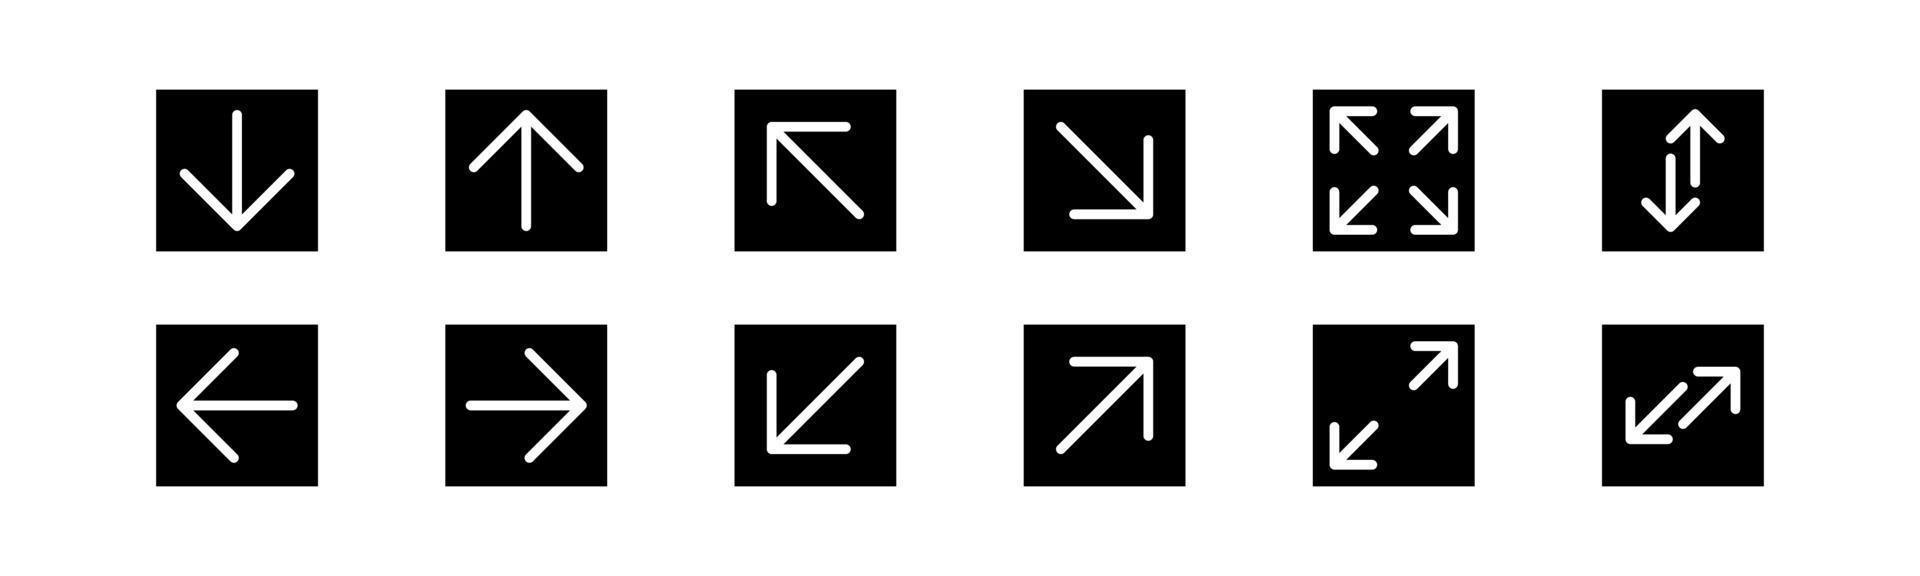 Vector graphic of arrow icon bundle design template